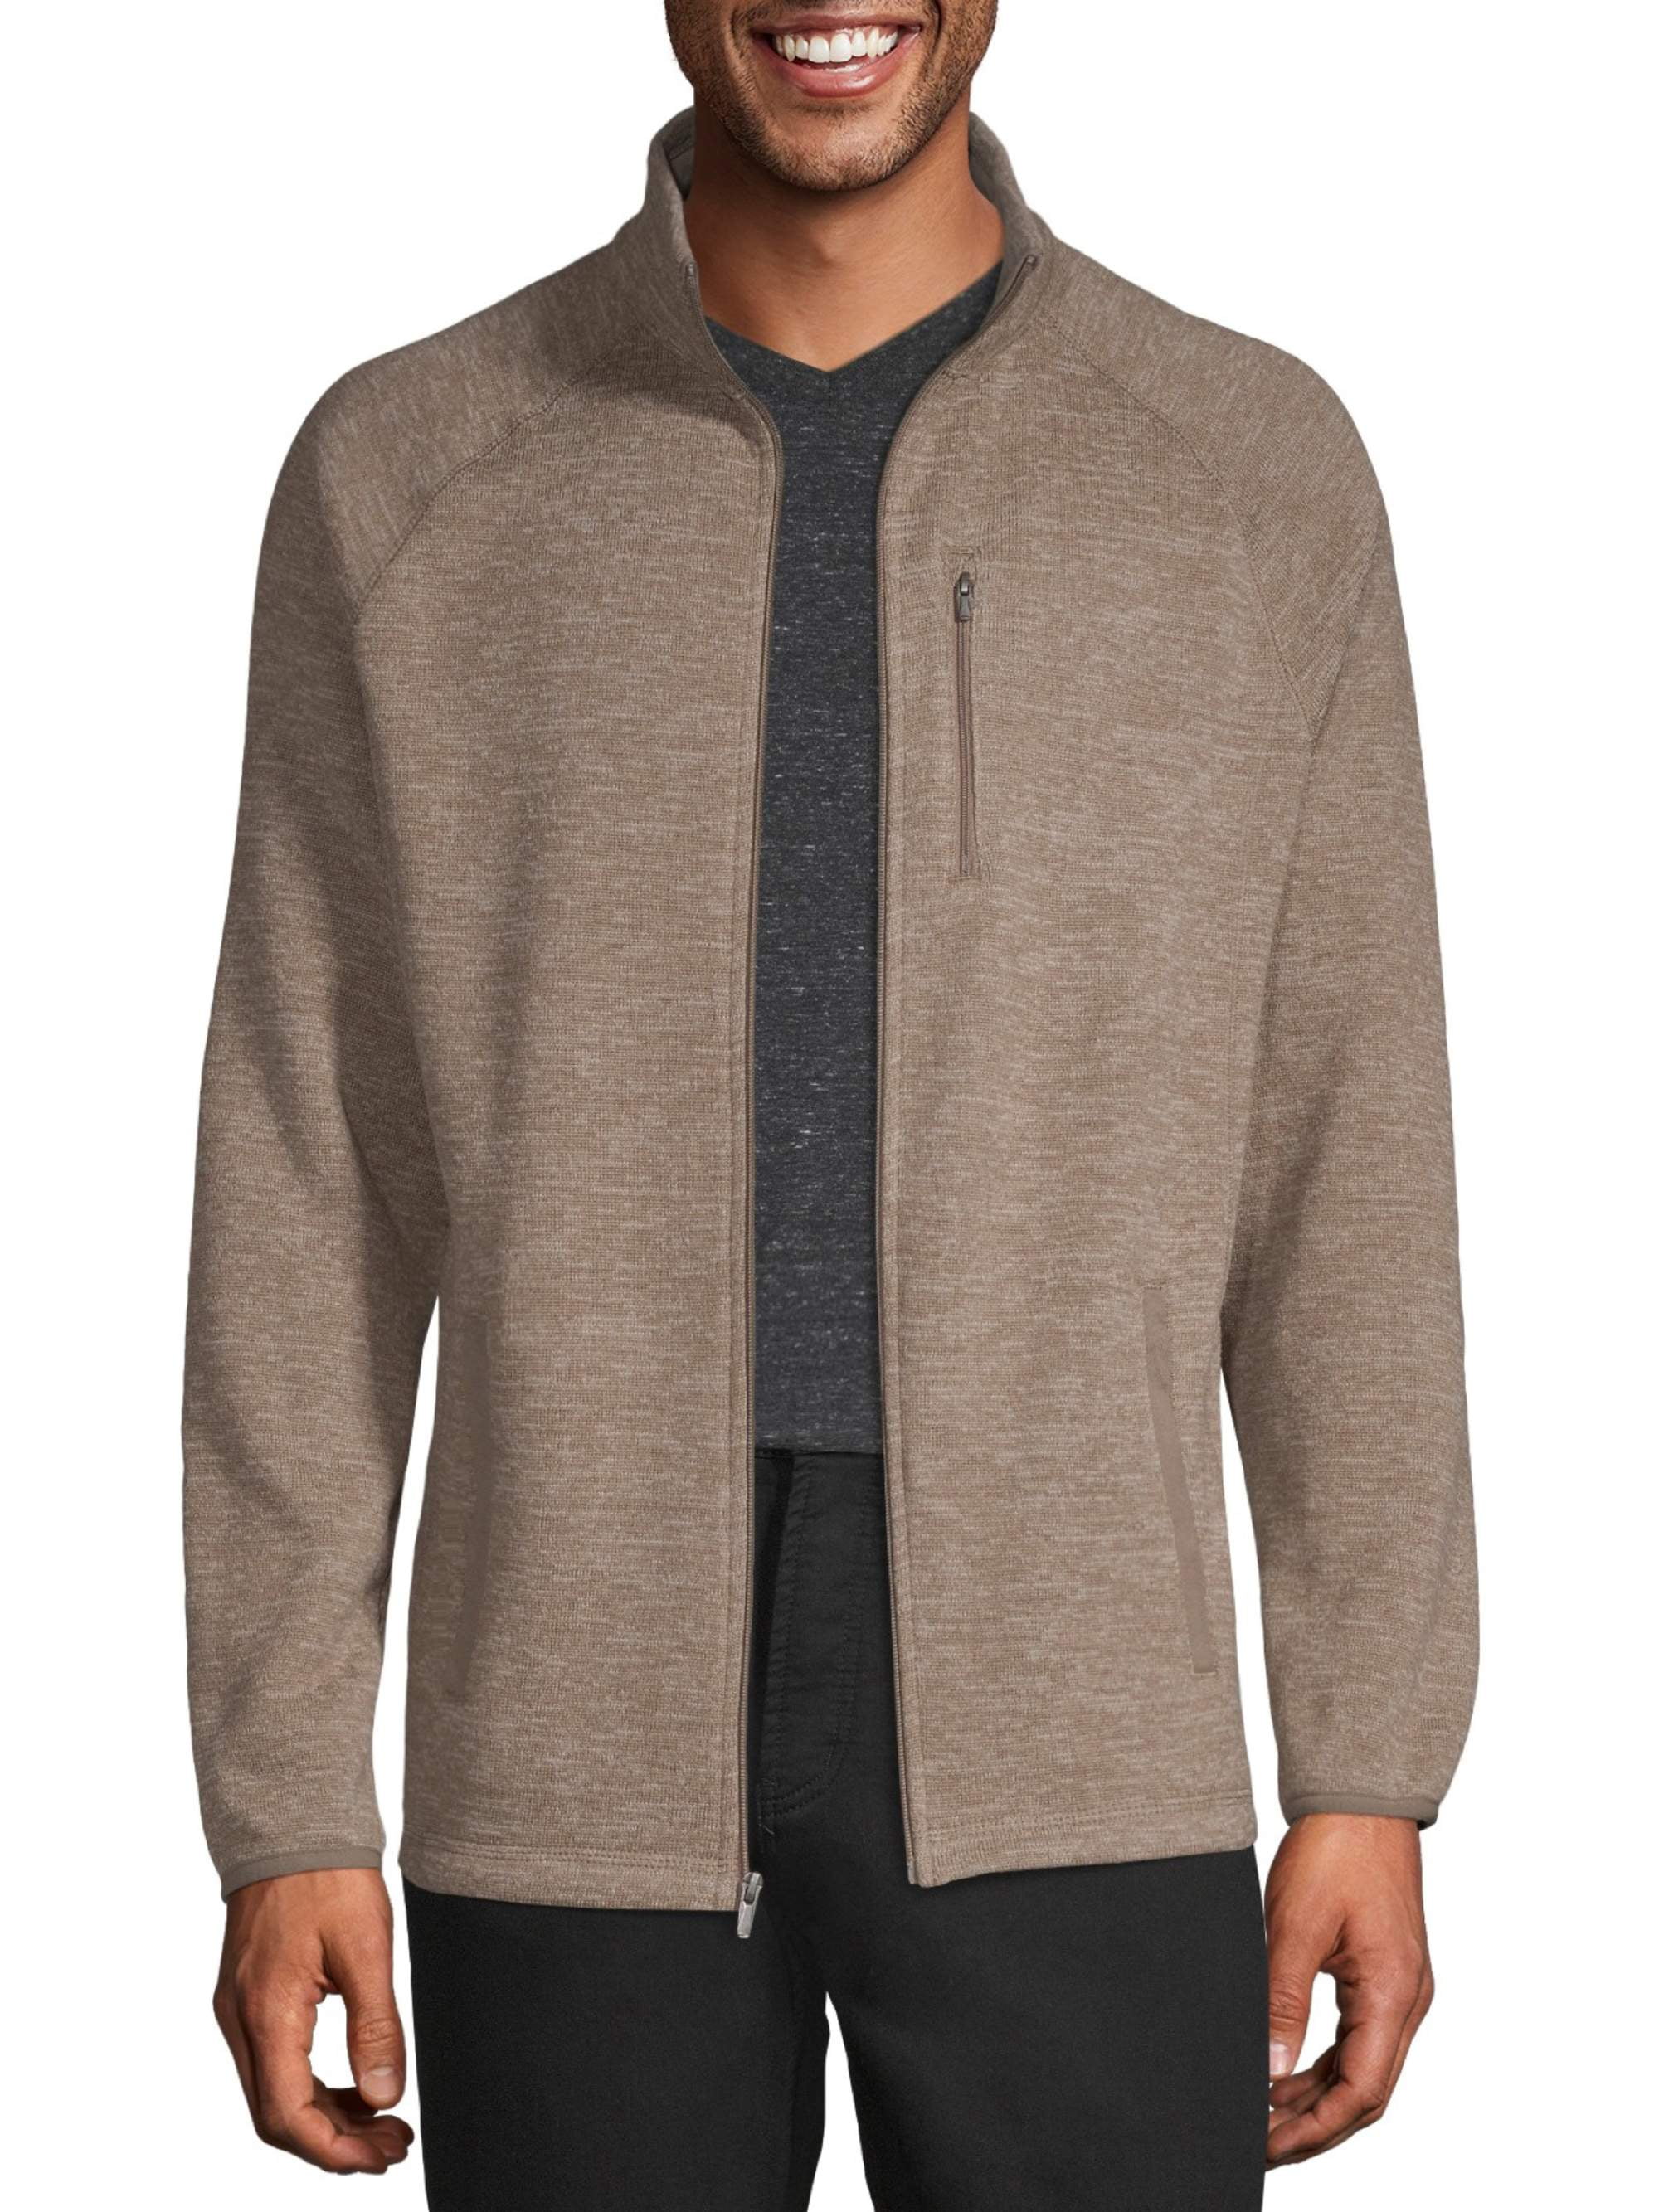 GEORGE - George Men's Full-Zip Sweater Fleece, Up to Size 5XL - Walmart ...